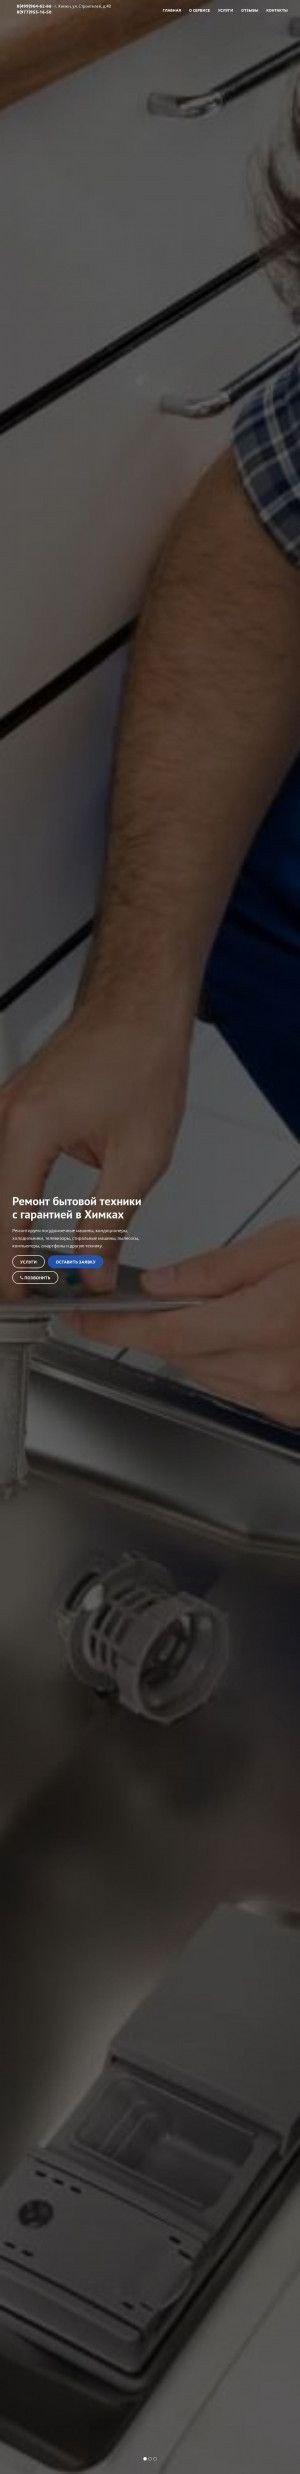 Предпросмотр для hites-service.ru — Ремонт бытовой техники